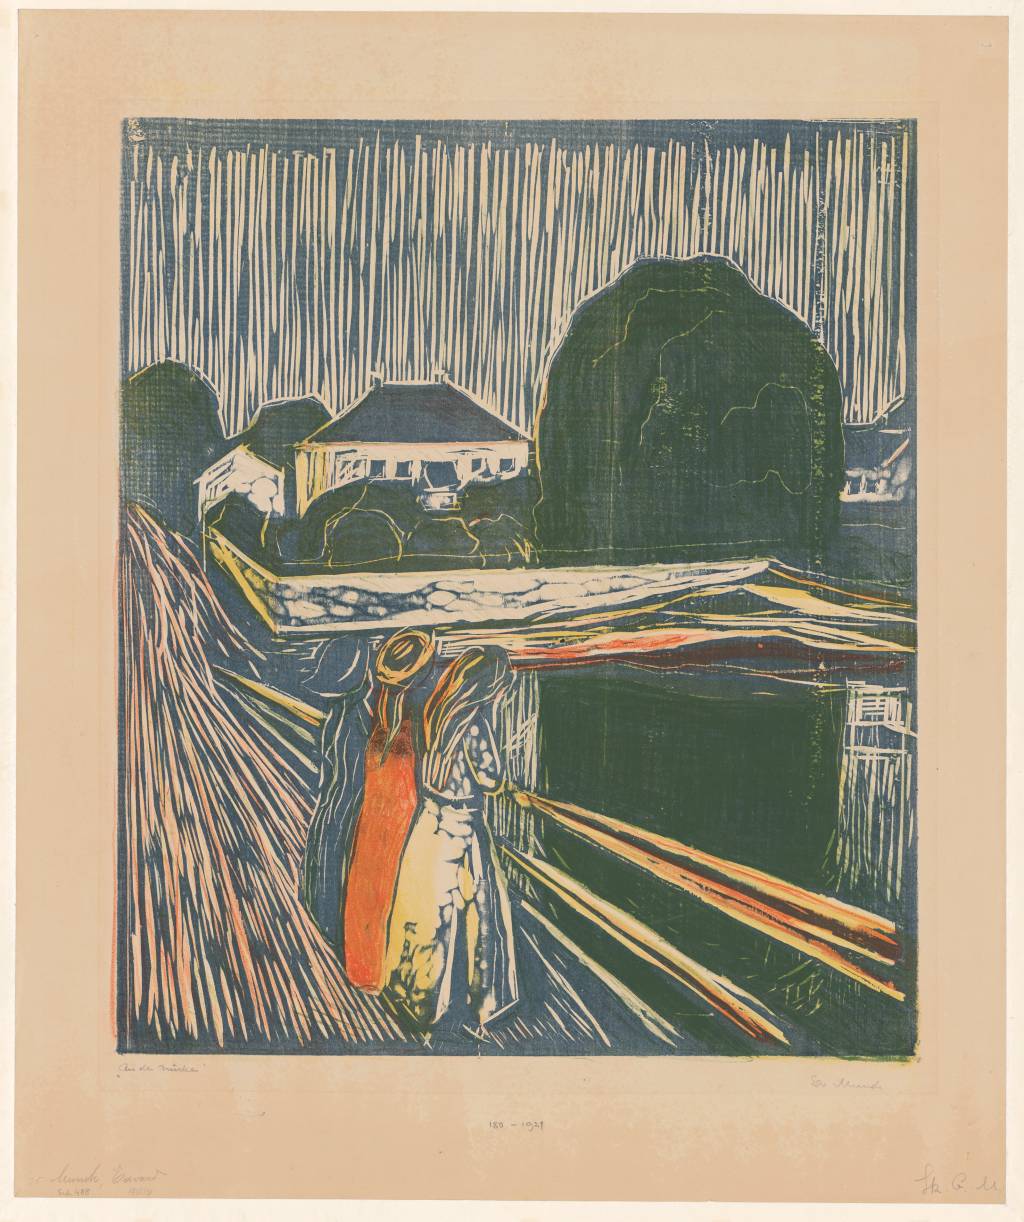 Meninas na Ponte(1918), de Edvard Munch